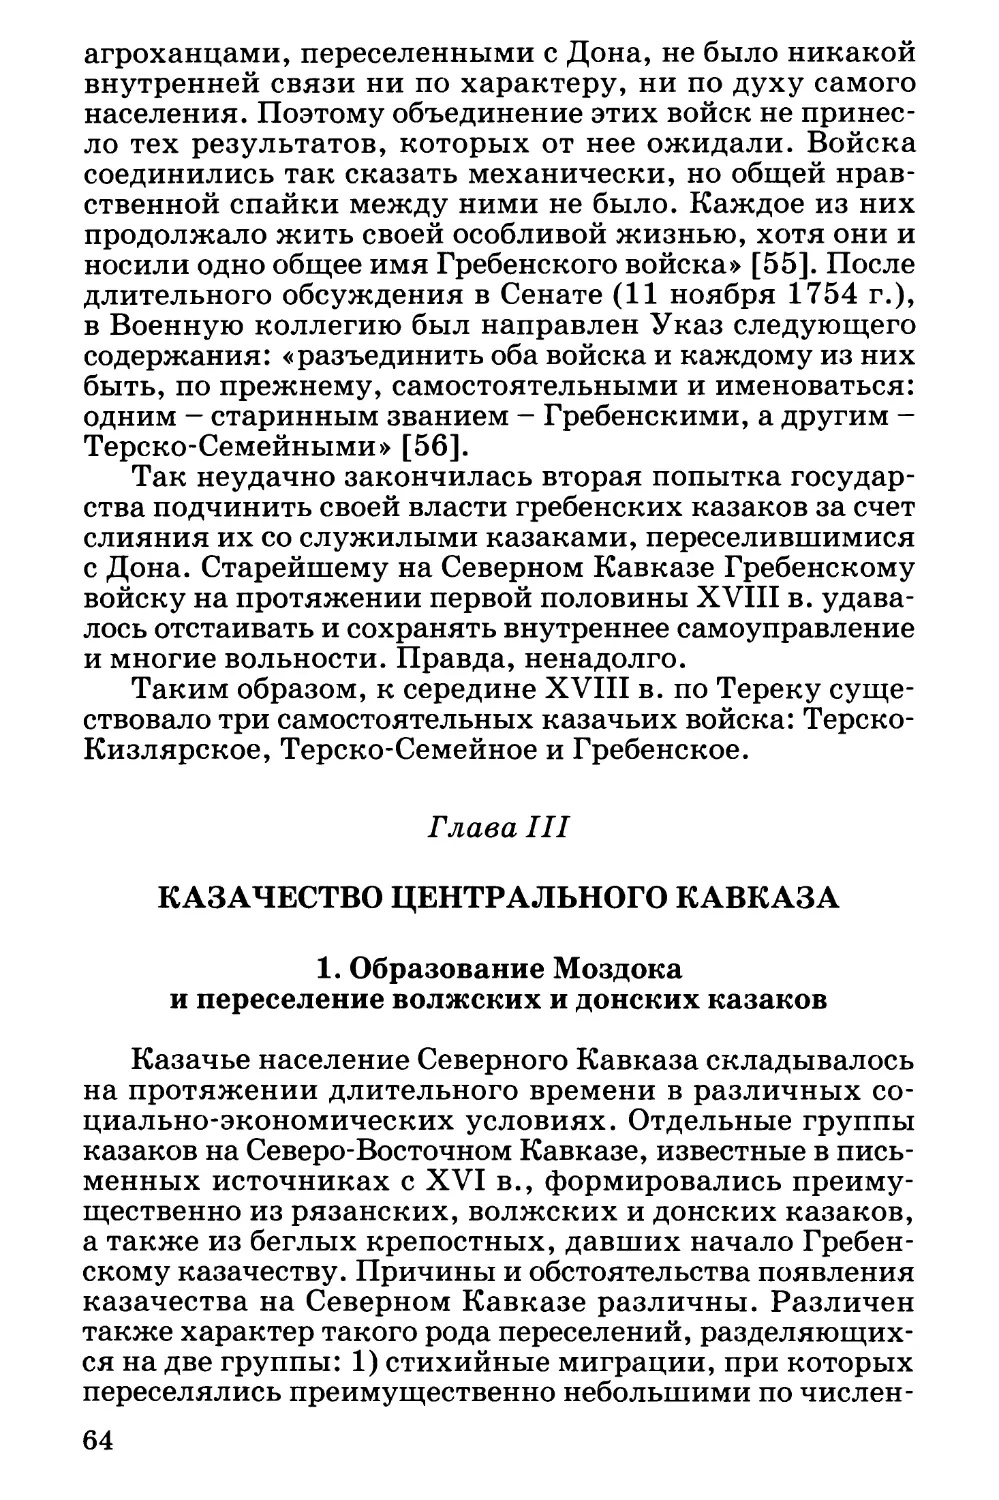 Глава III. Казачество Центрального Кавказа